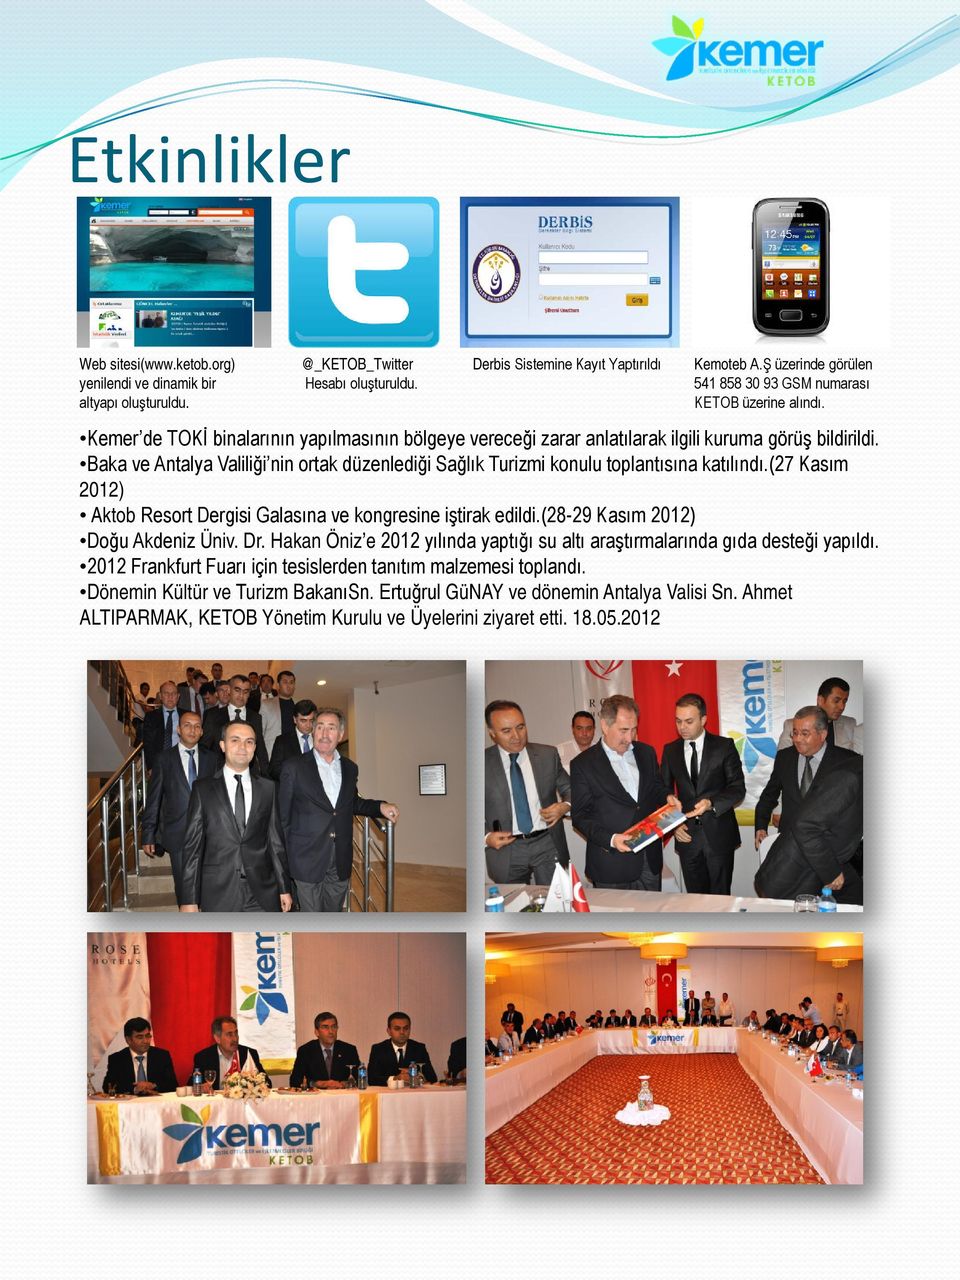 Baka ve Antalya Valiliği nin ortak düzenlediği Sağlık Turizmi konulu toplantısına katılındı.(27 Kasım 2012) Aktob Resort Dergisi Galasına ve kongresine iştirak edildi.